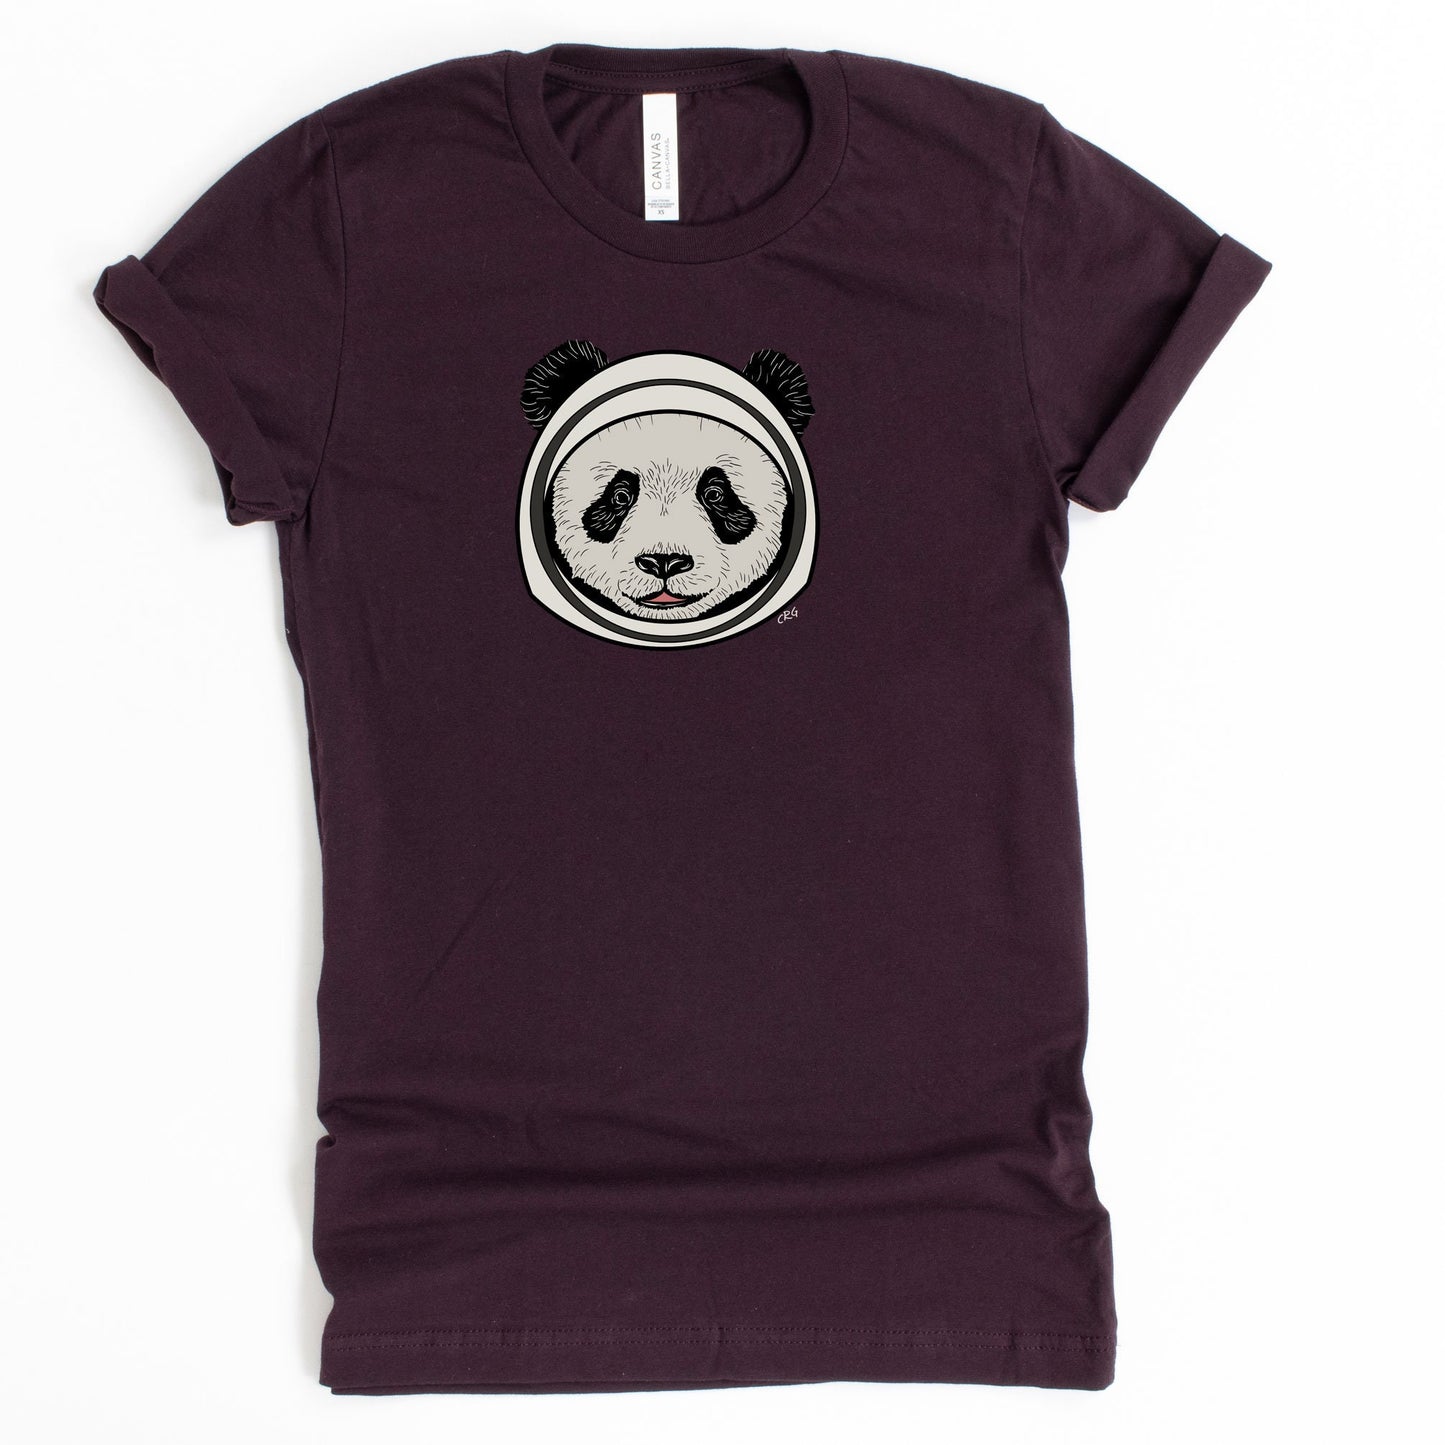 Astronaut Panda Shirt